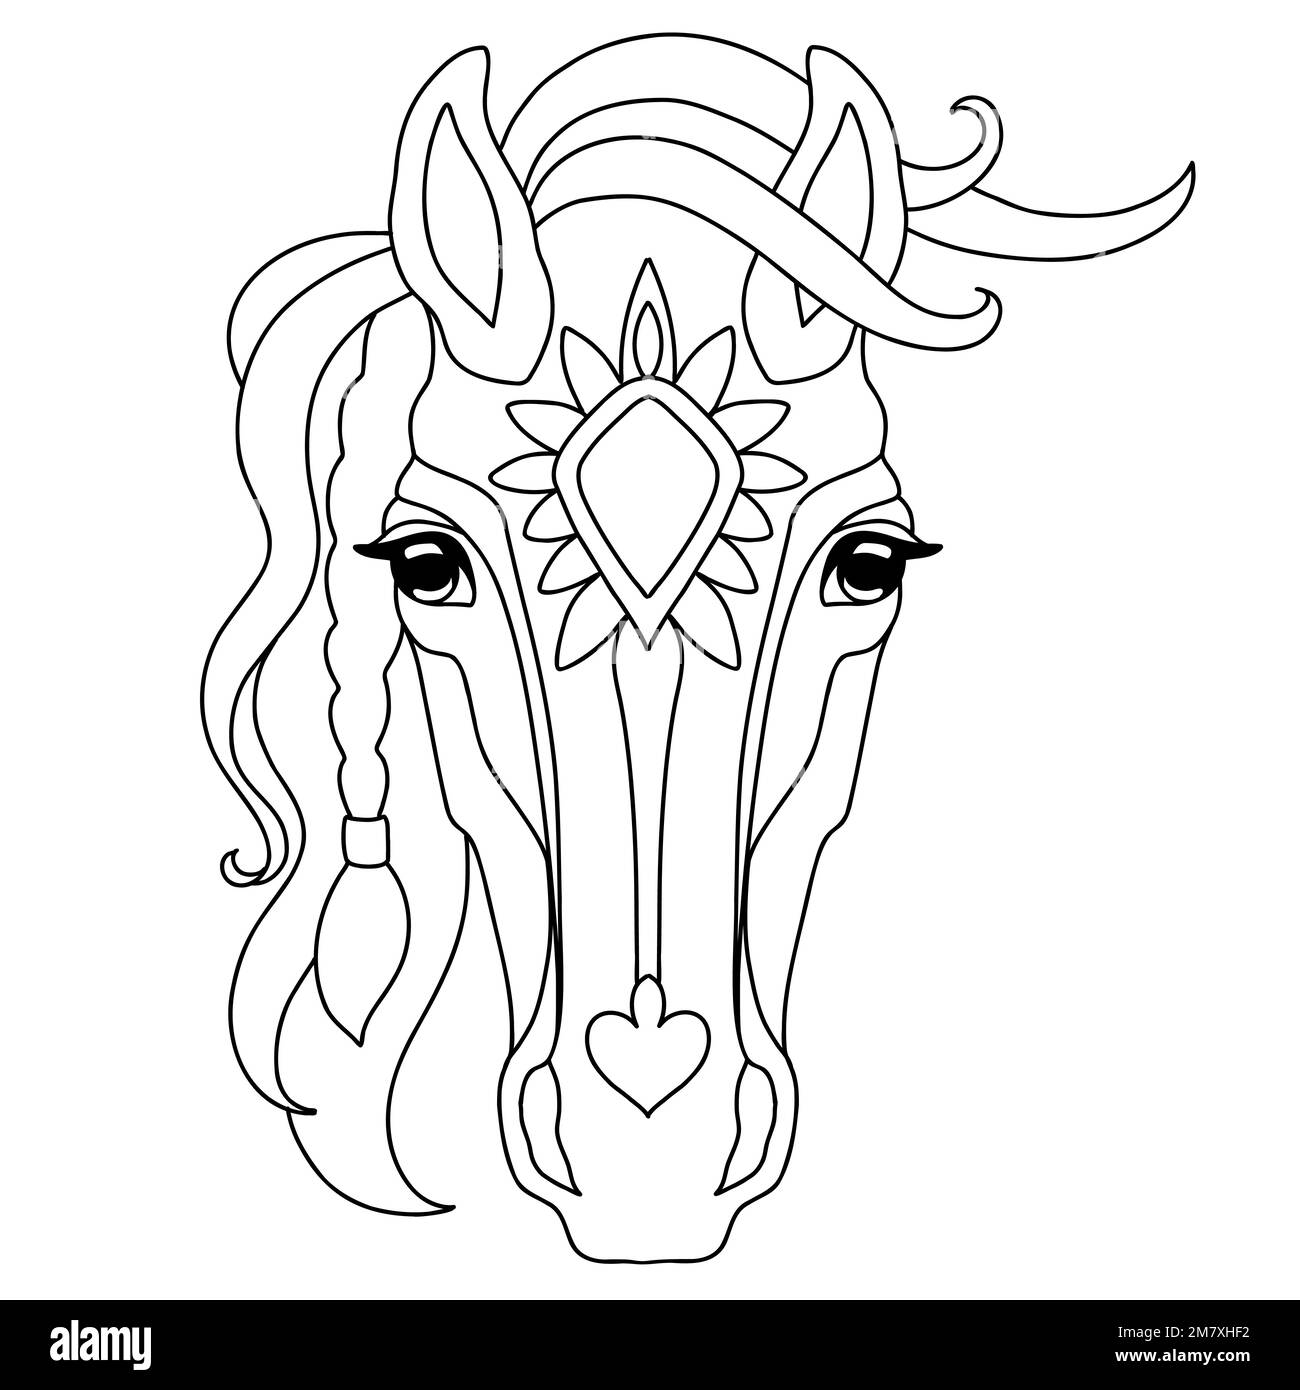 Cabeza de diseño de enredos de caballos. Dibujado a mano doodle ilustración vectorial. Plantilla con formas simples para crear un colorante decorativo complejo. Cabeza animal f Ilustración del Vector